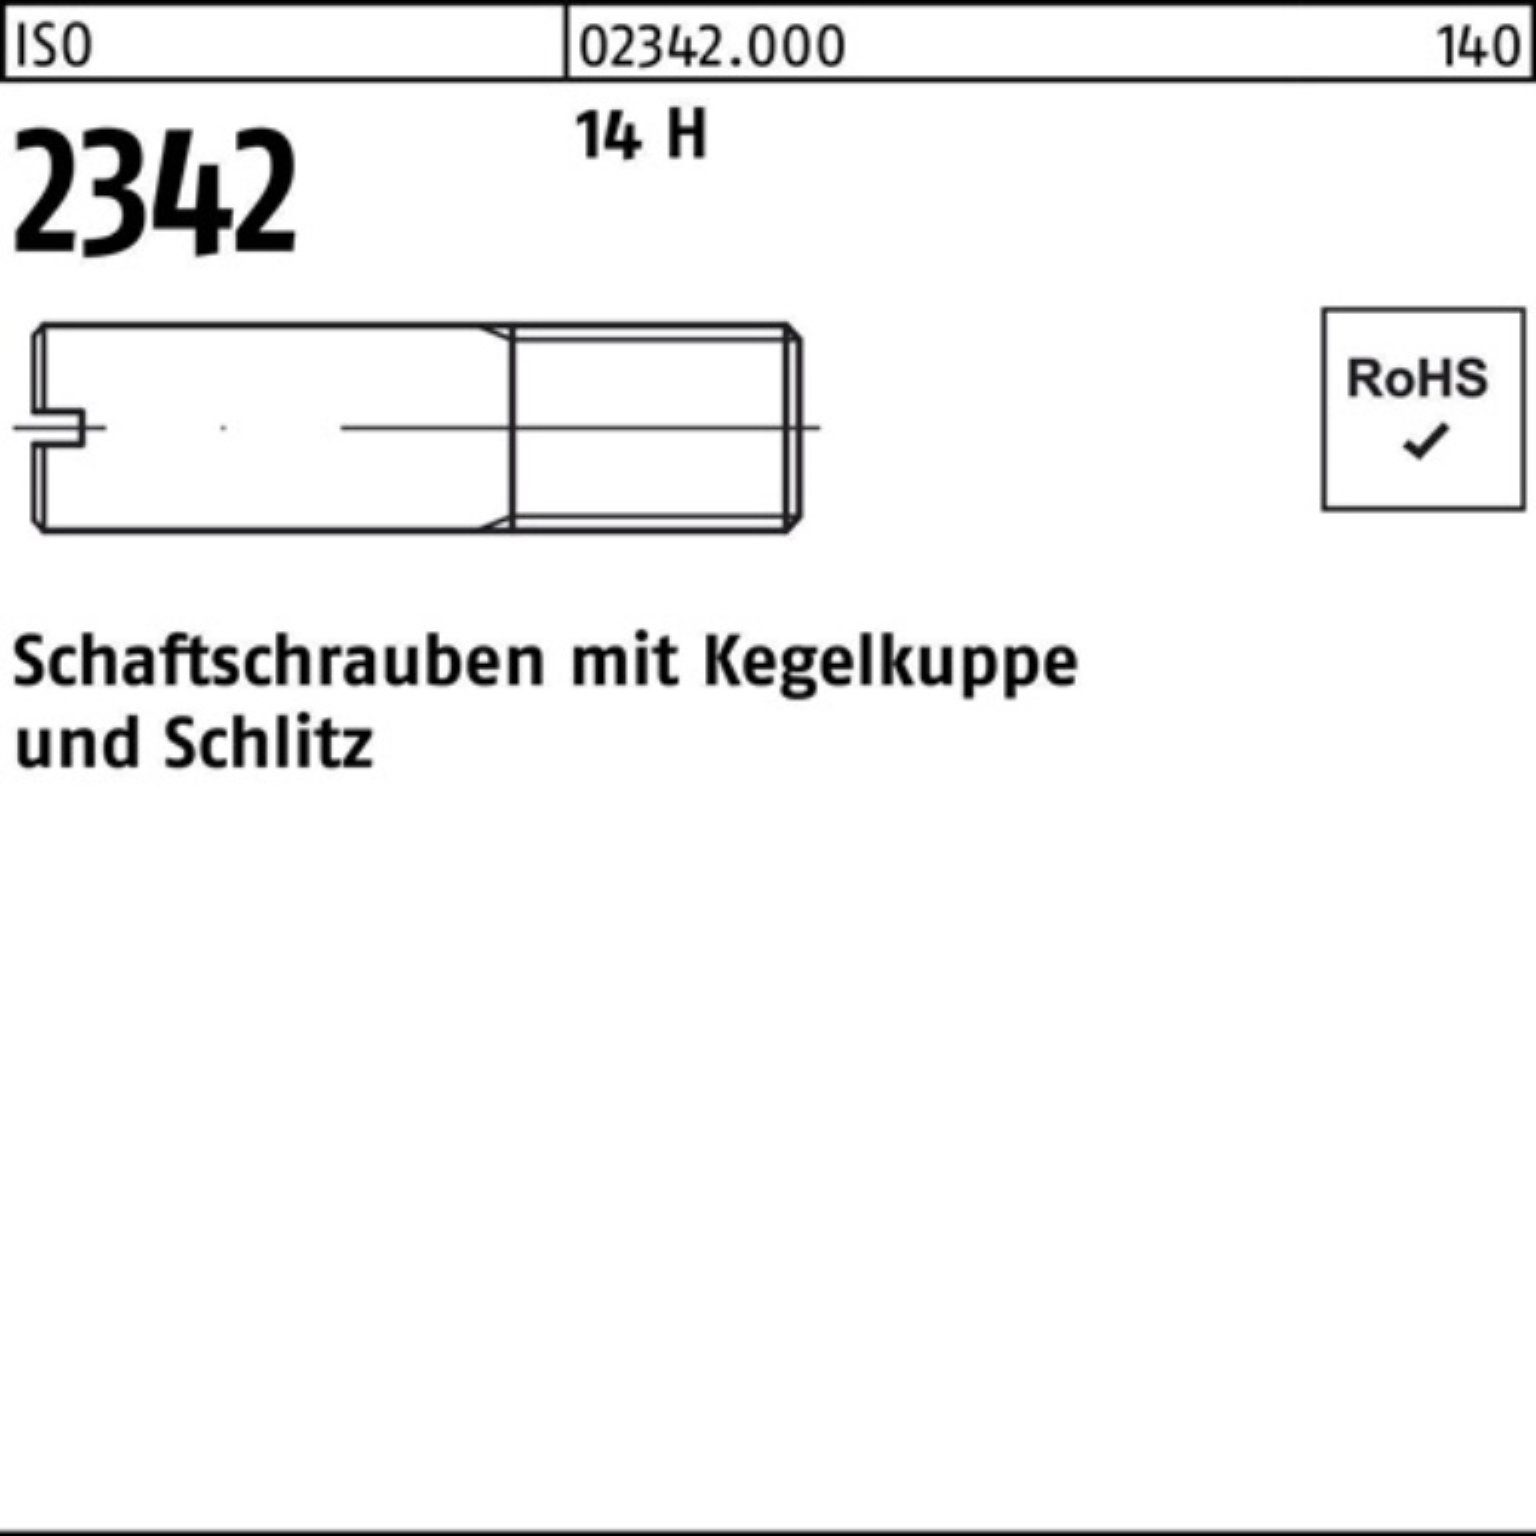 Reyher Schraube 100er Pack Schaftschraube ISO 2342 Kegelkuppe/Schlitz M6x 35 14 H 100